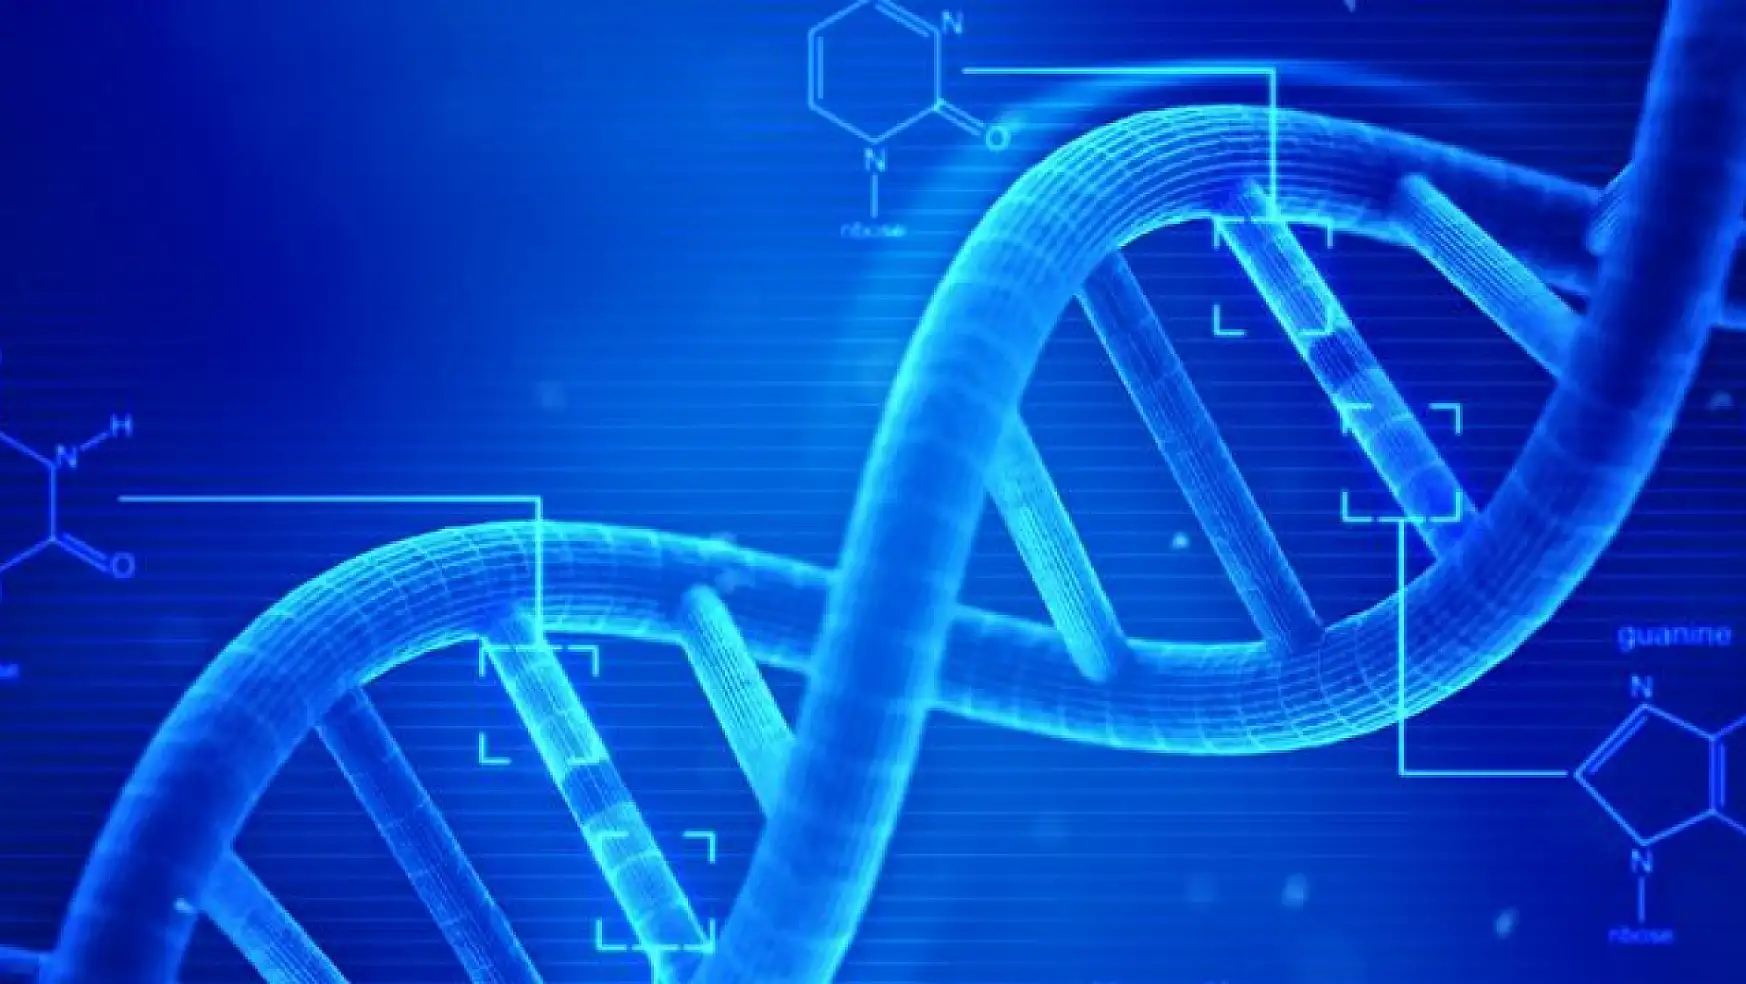 Hassas Genetik Mühendisliği: CRISPR teknolojisi ile geleceğin tıbbı şekilleniyor